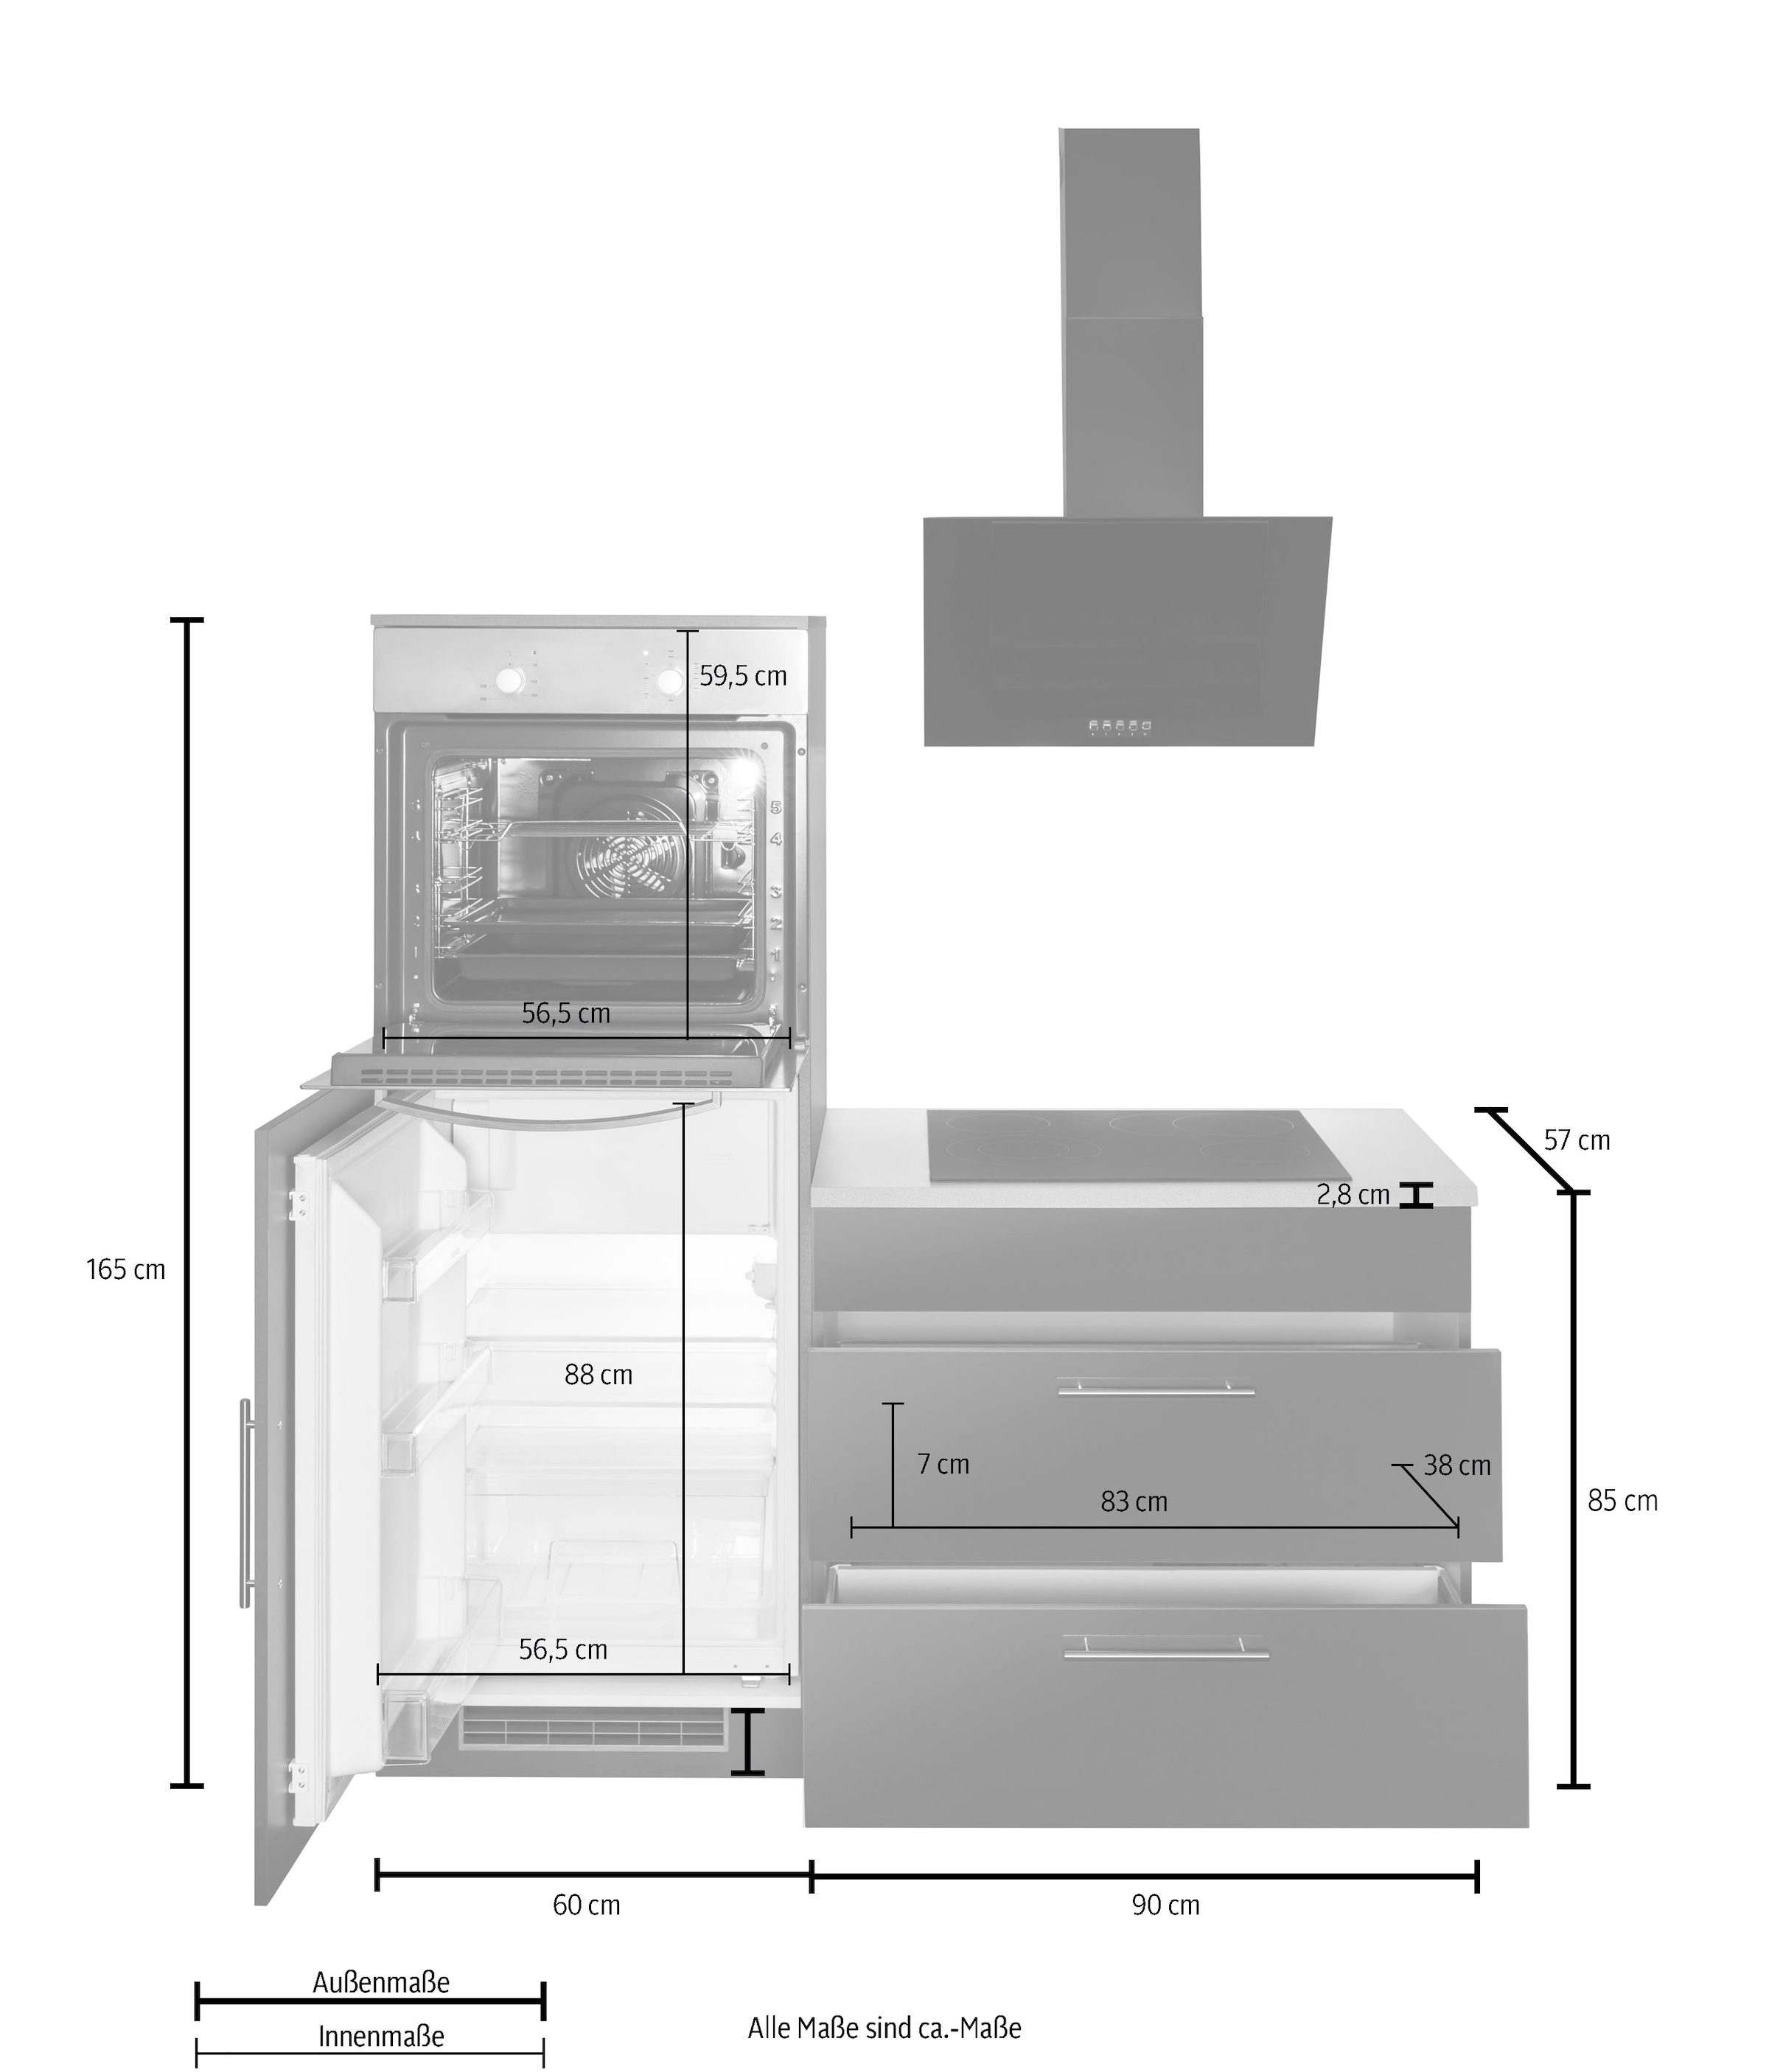 wiho Küchen Winkelküche »Cali«, ohne E-Geräte, Stellbreite 210 x 220 cm